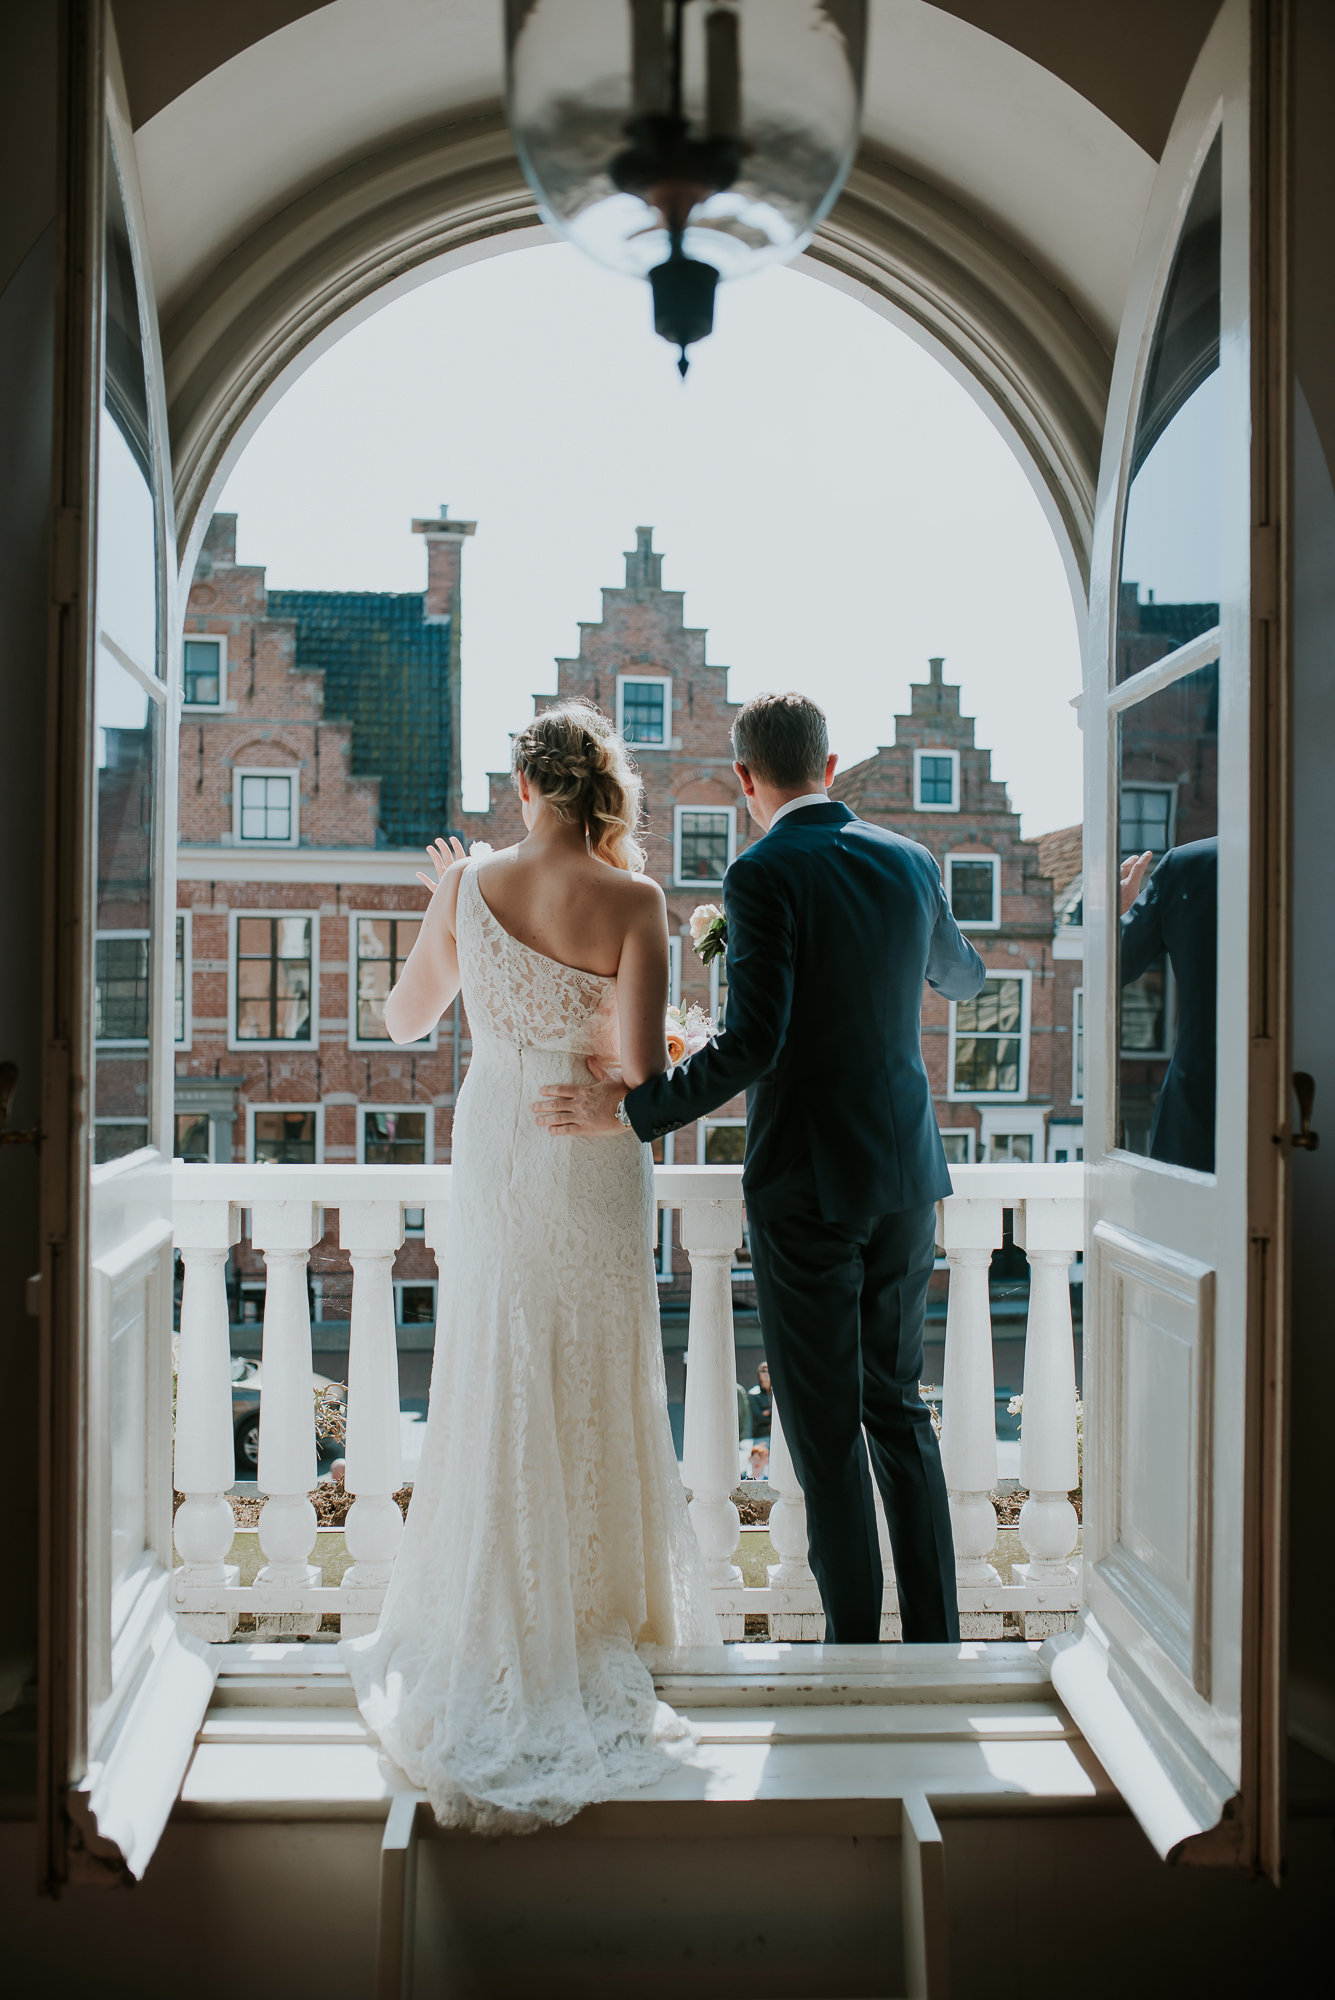 Het bruidspaar zwaait vanaf het balkon naar de gasten. Huwelijksfotografie door huwelijksfotograaf uit Dokkum, Friesland.